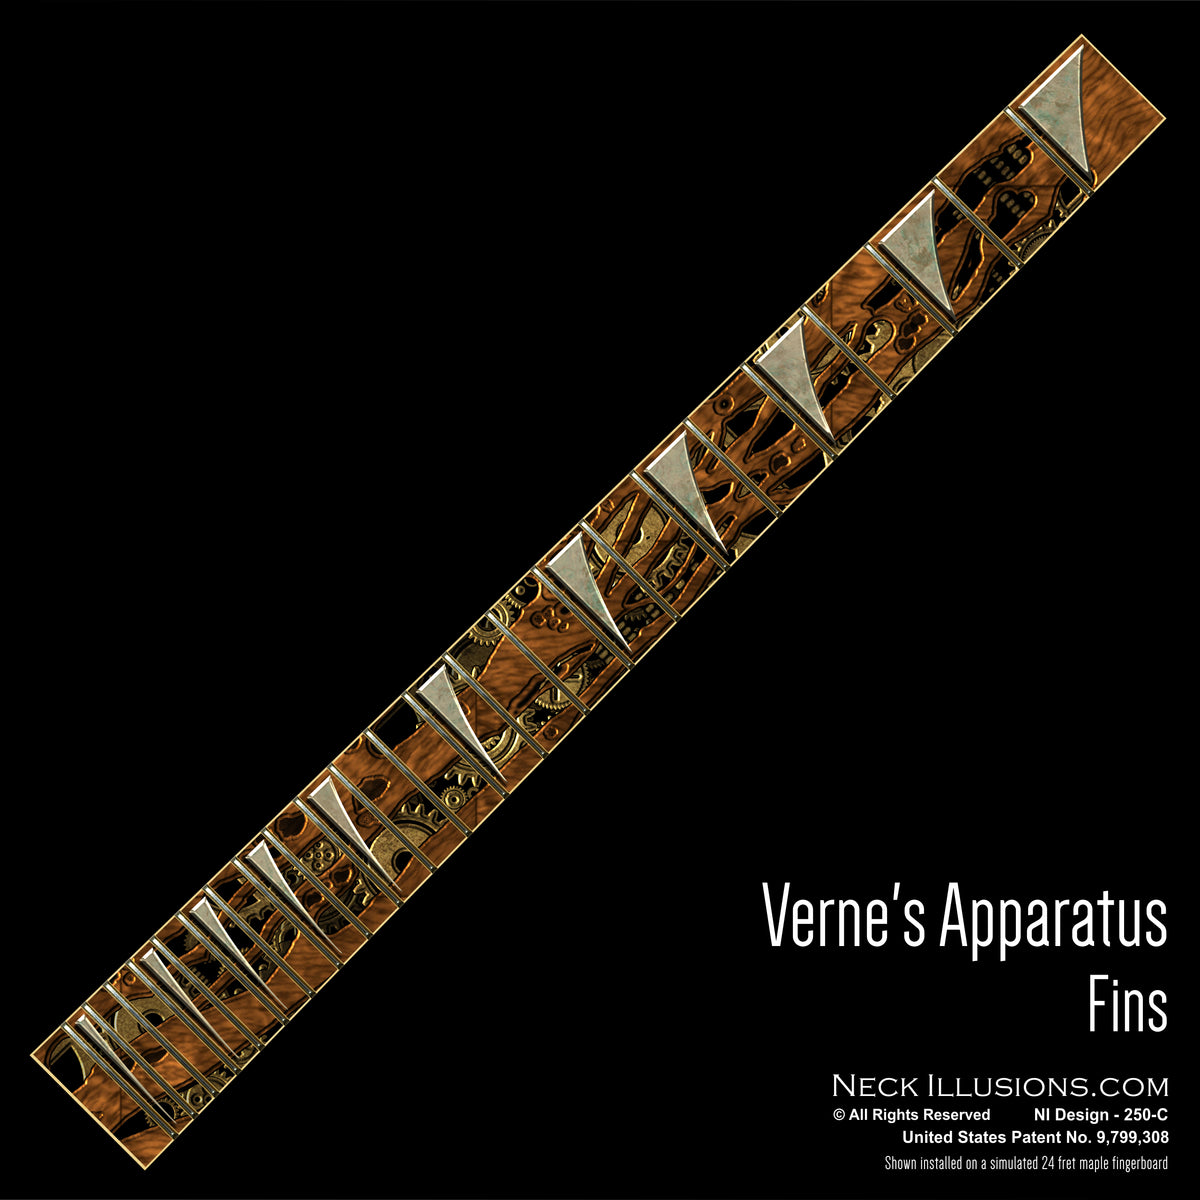 Verne's Apparatus